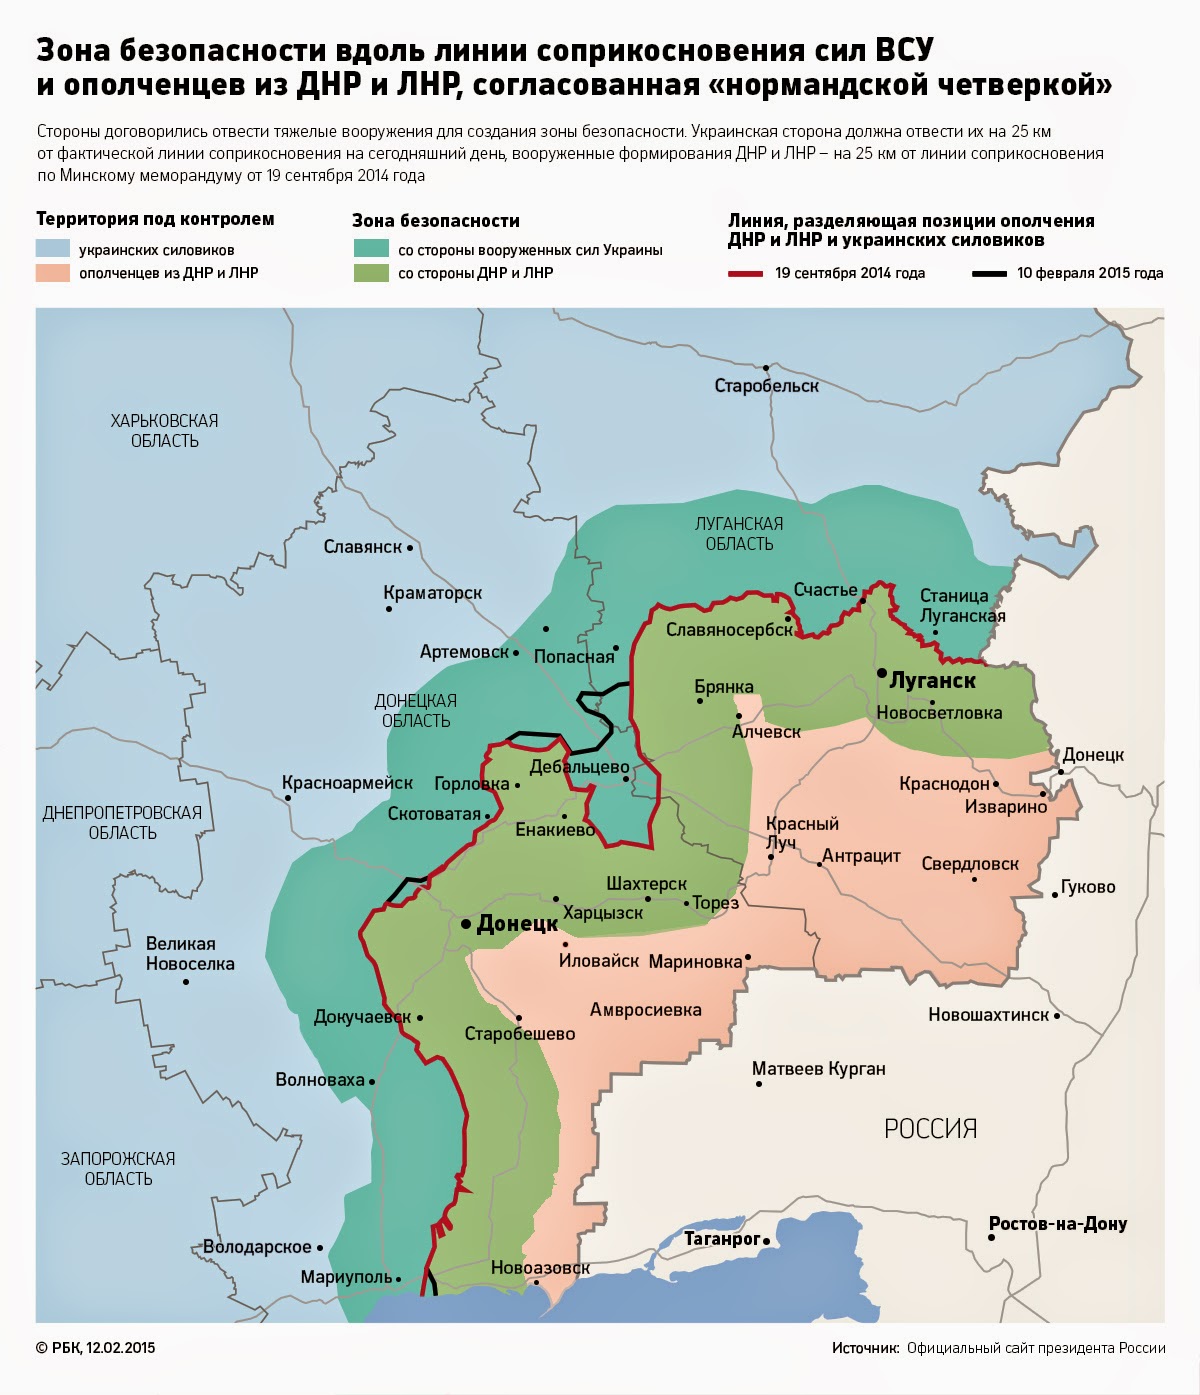 Historia y tecnología militar: Actualidad de Ucrania 13-2-2015